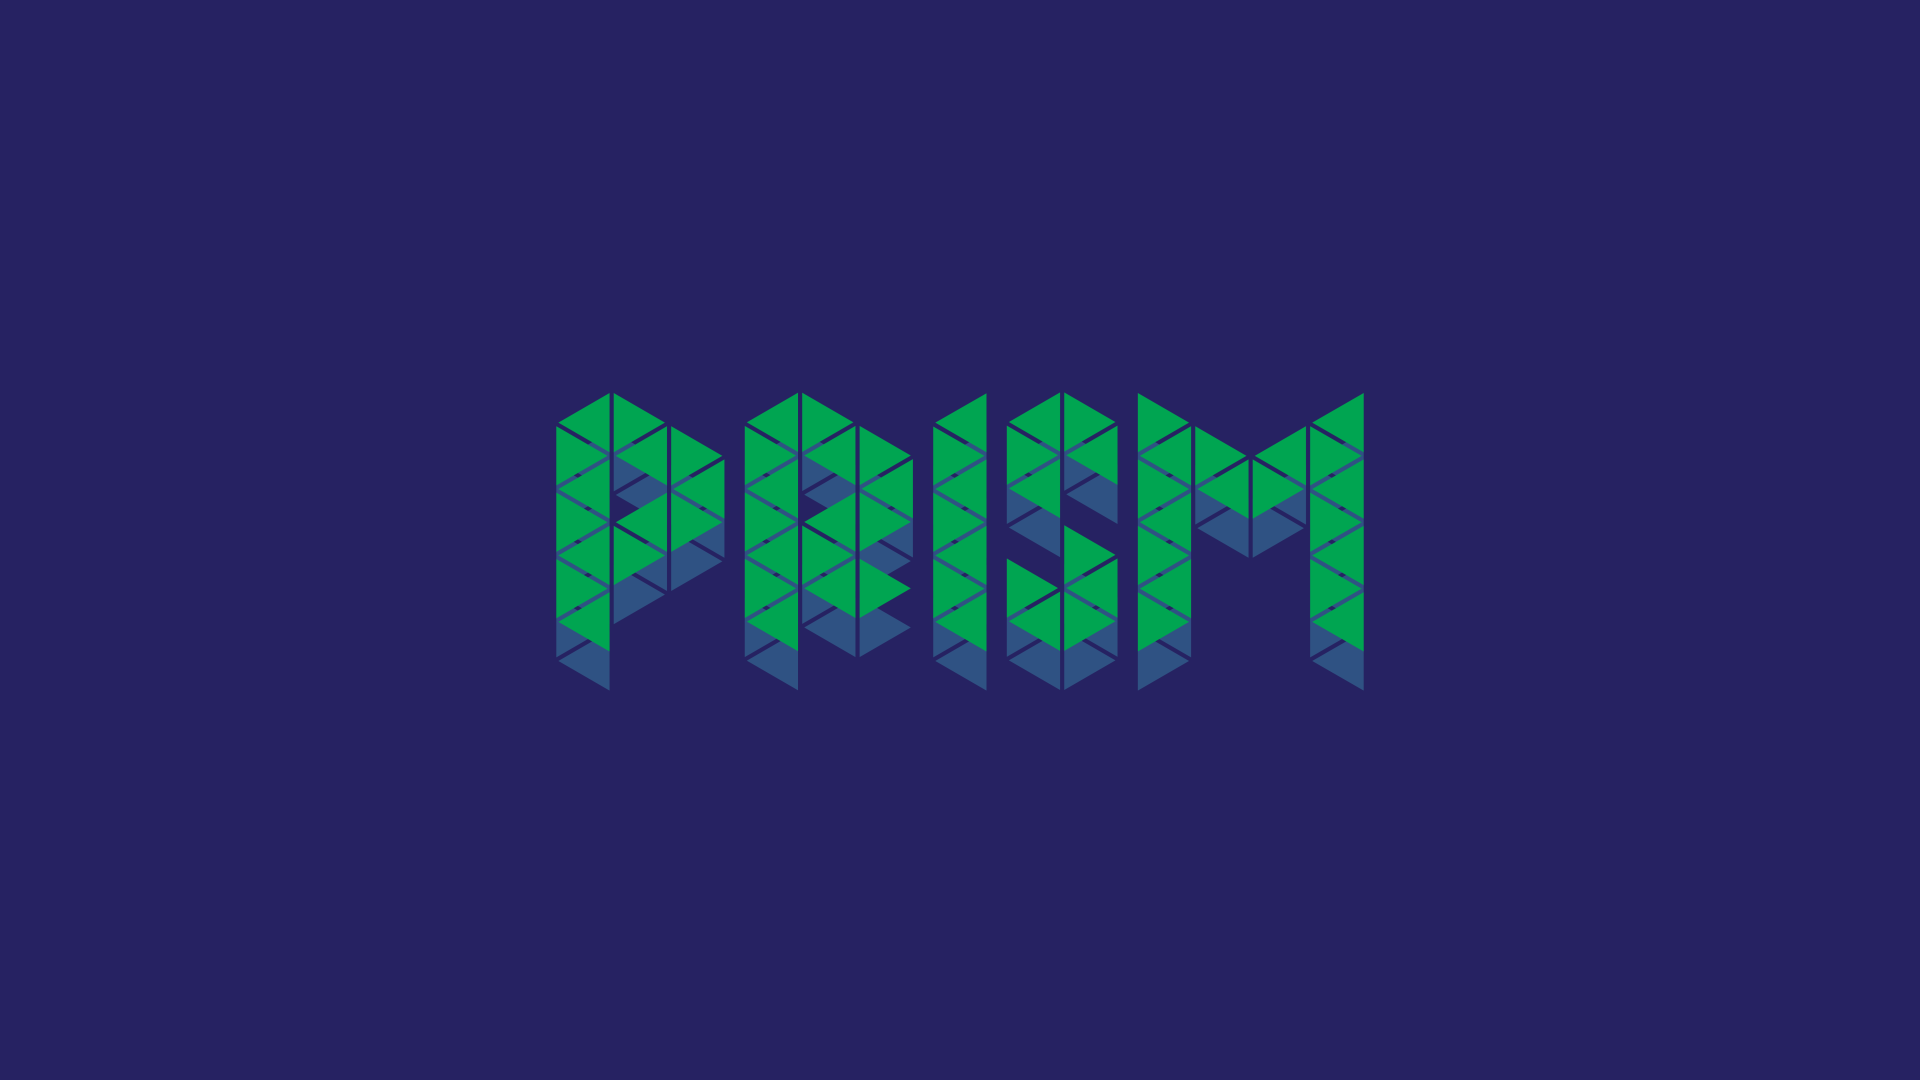 Follow you PRISM